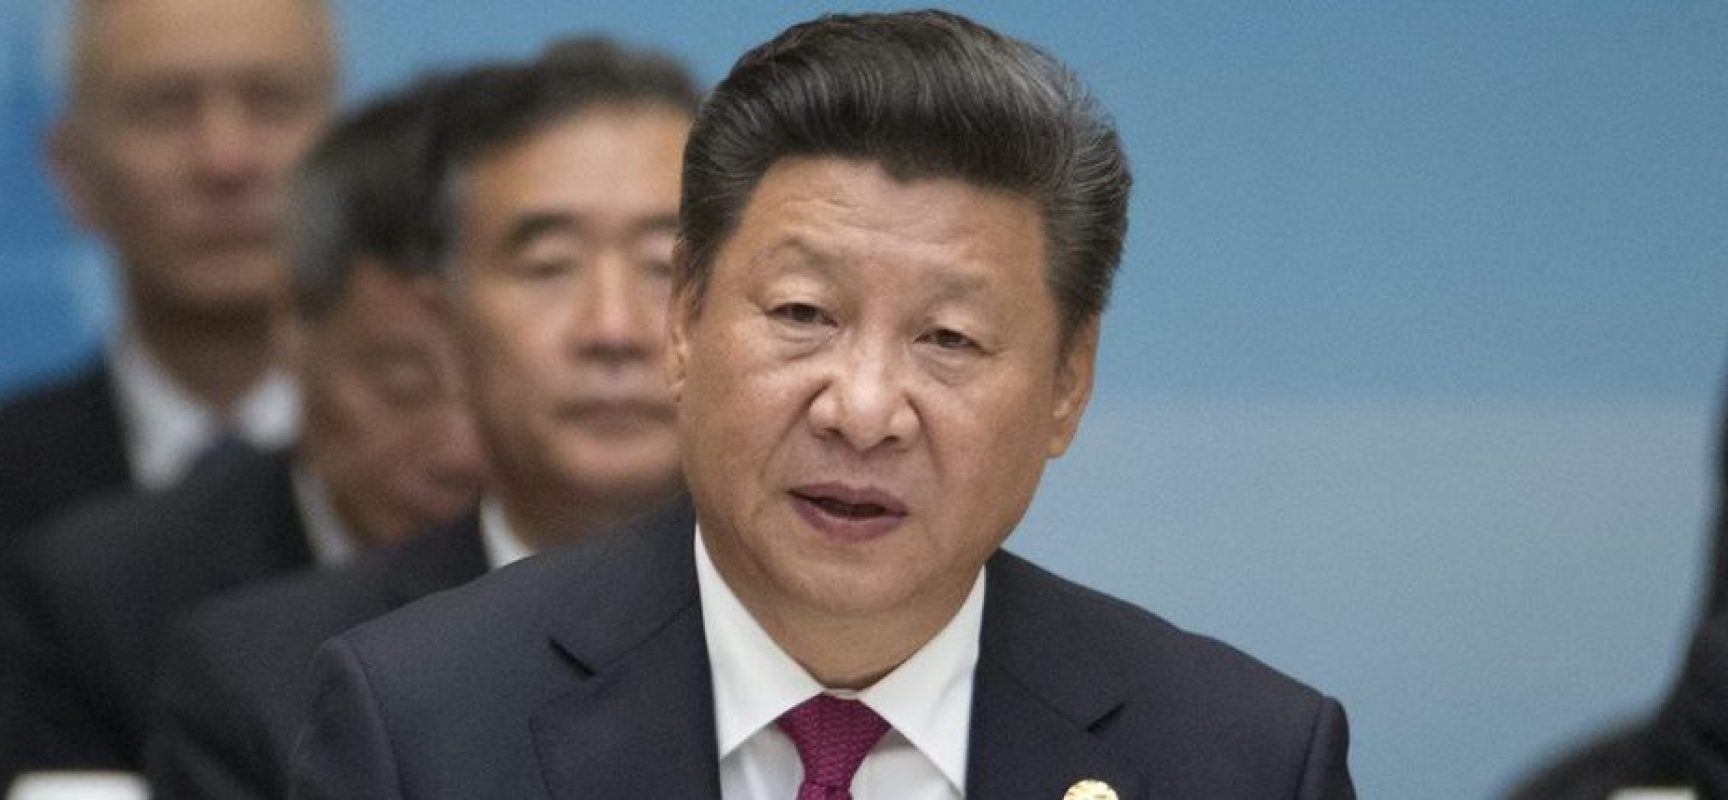 Presidente chinês diz que está disposto a trabalhar com Bolsonaro